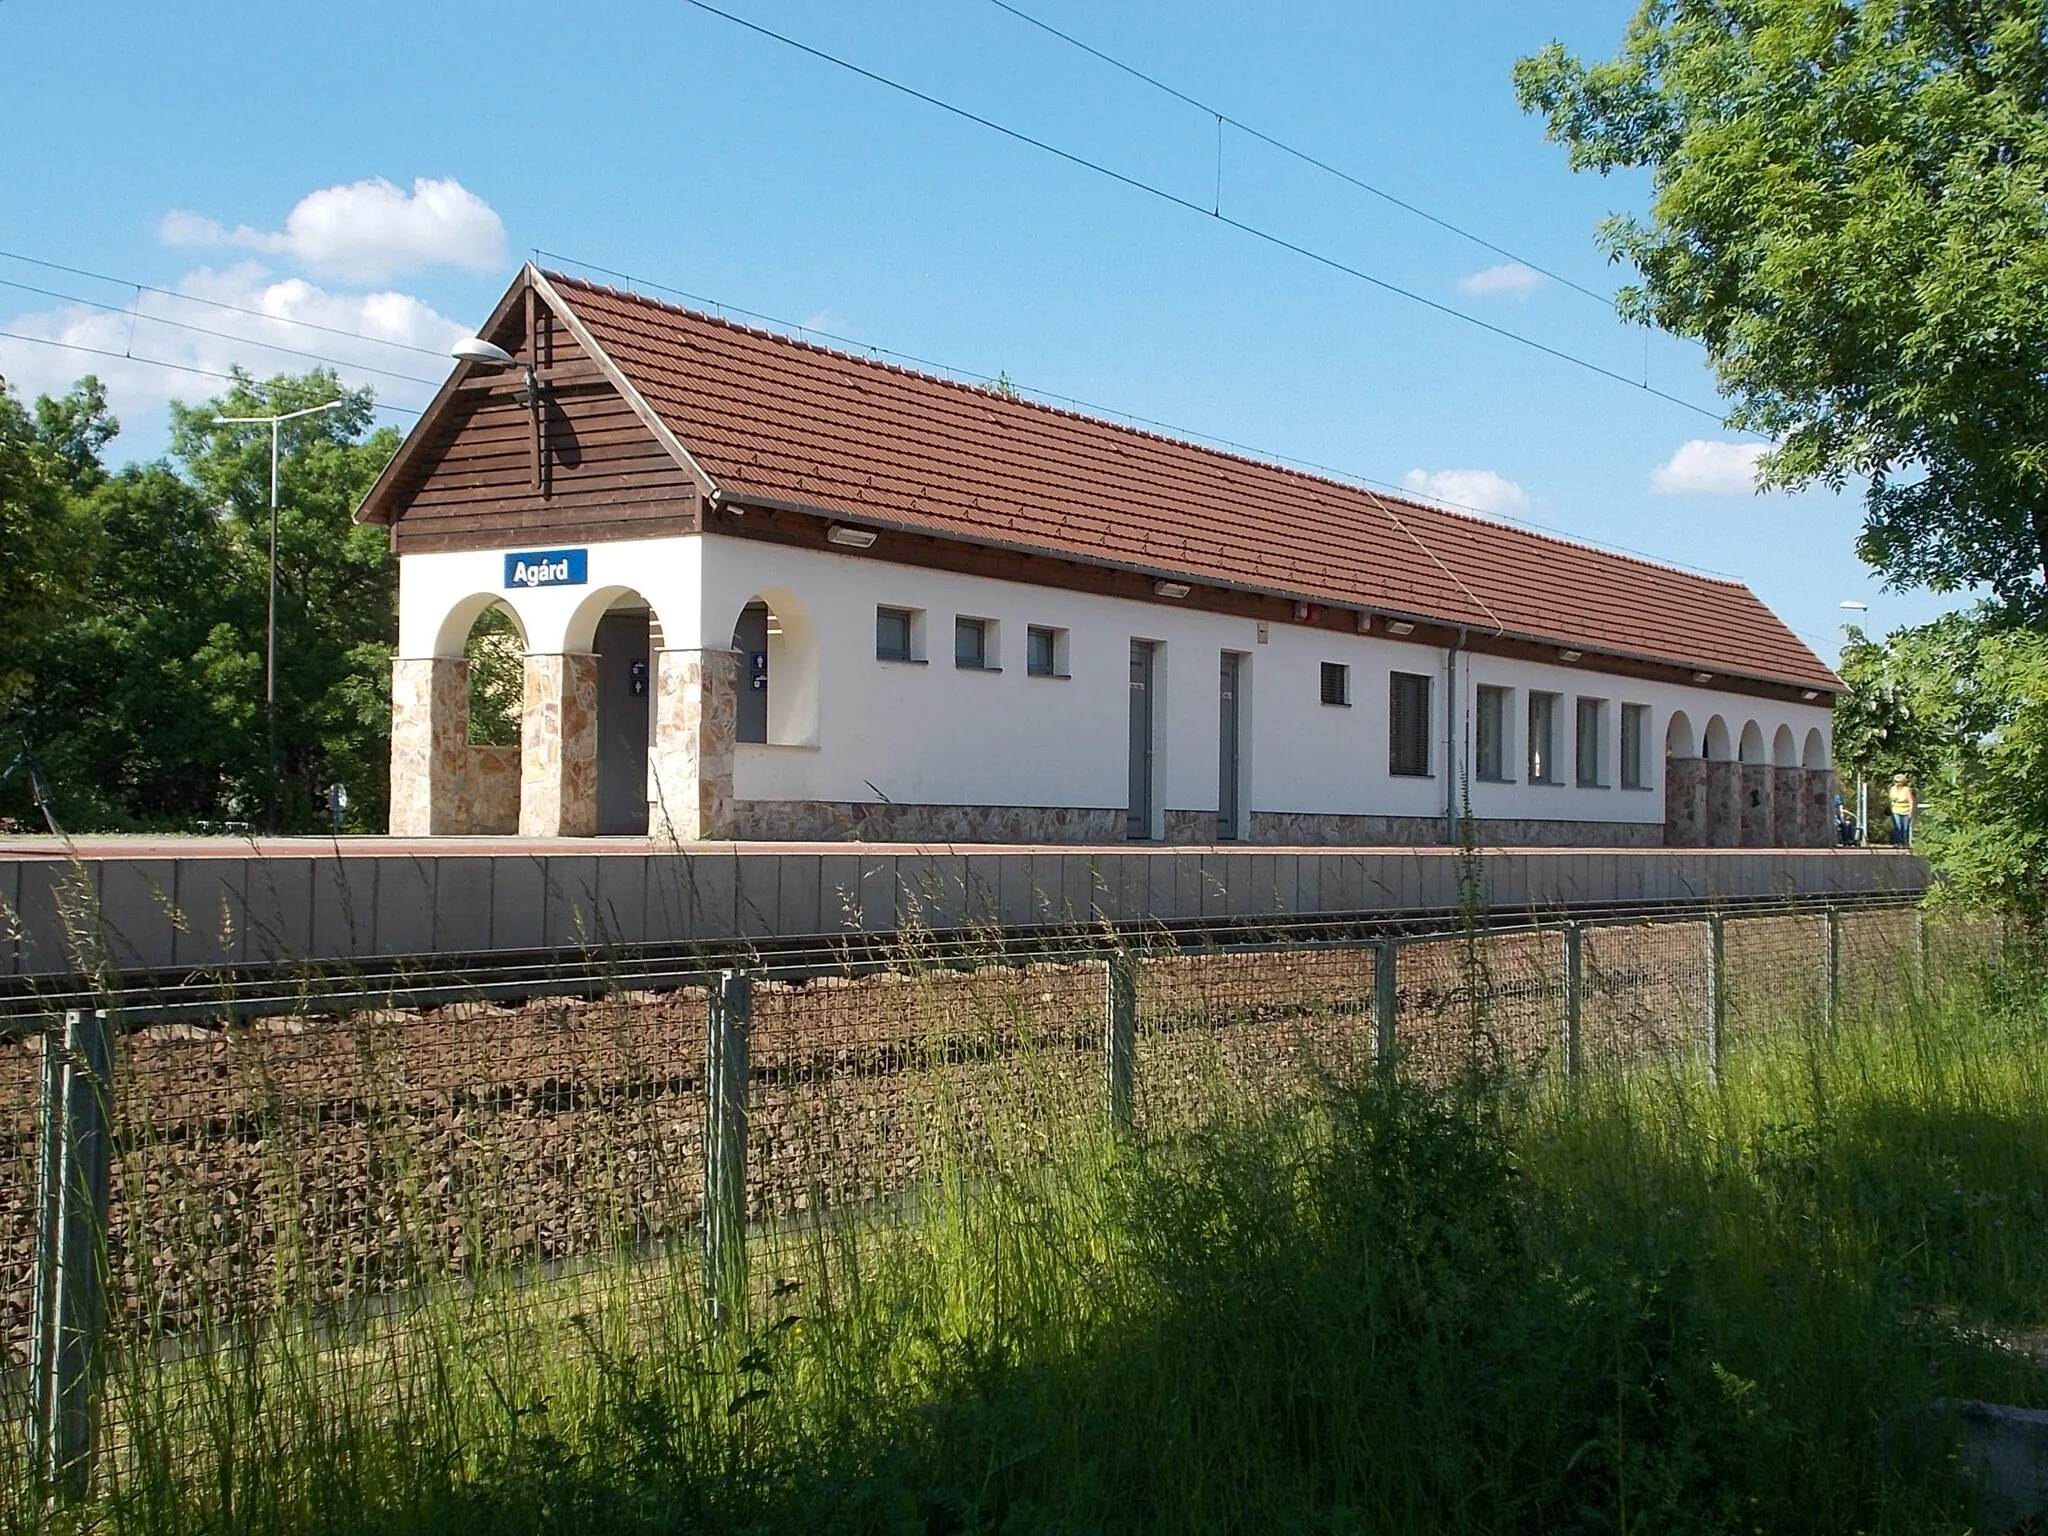 Photo showing: : Agárd railway station from Vasút Street, Agárd, Gárdony, Fejér County, Hungary.